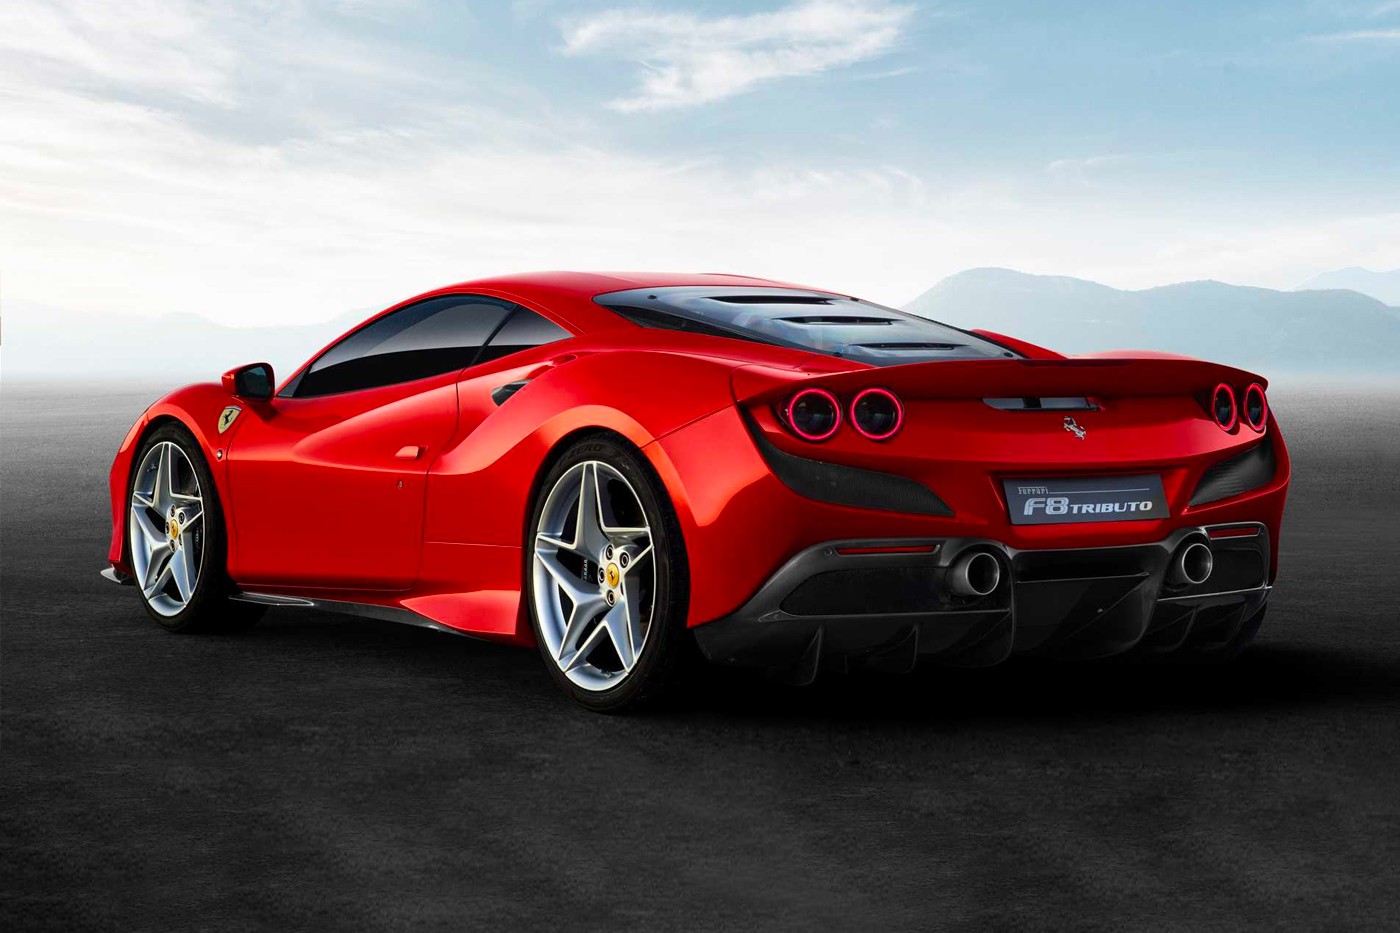 2020 Ferrari F8 Tributo Revealed